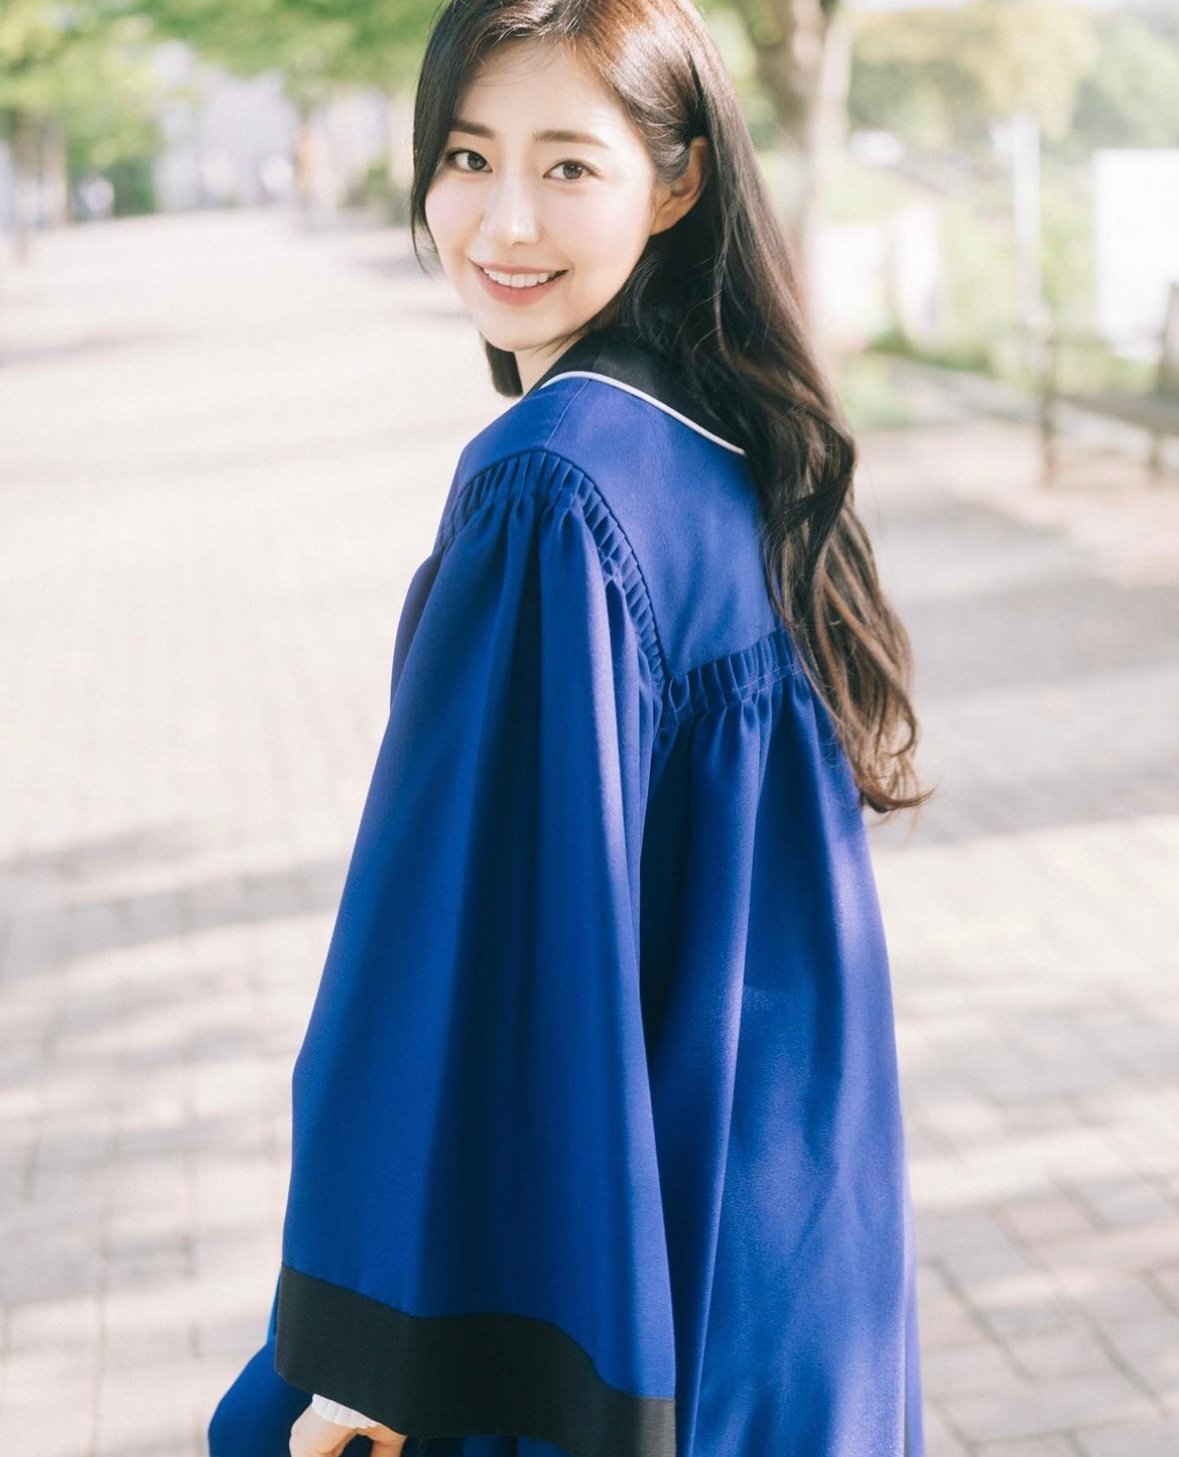 솔로지옥2 나온 신슬기 서울대학교 졸업사진